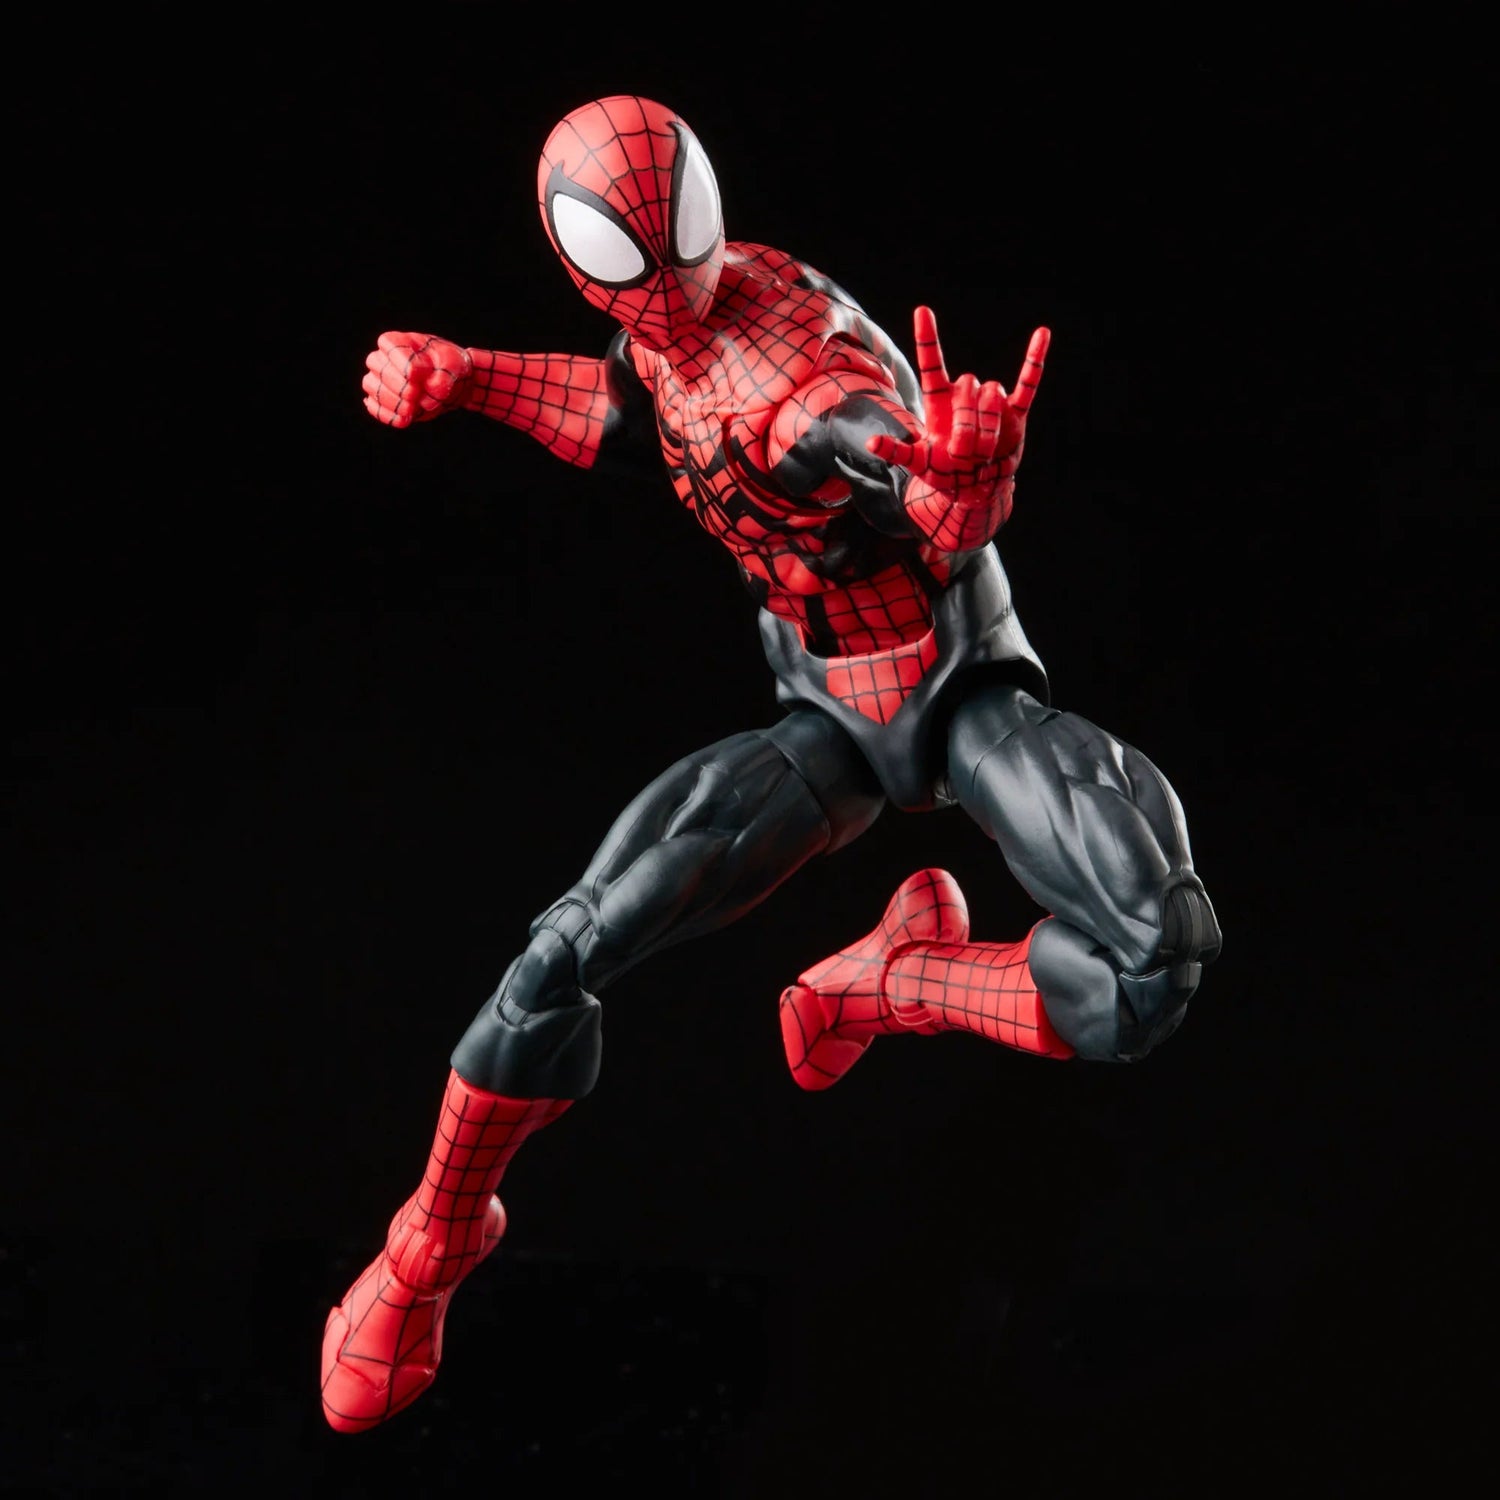 Spider-Man Retro Marvel Legends Ben Reilly Spider-Man Hasbro